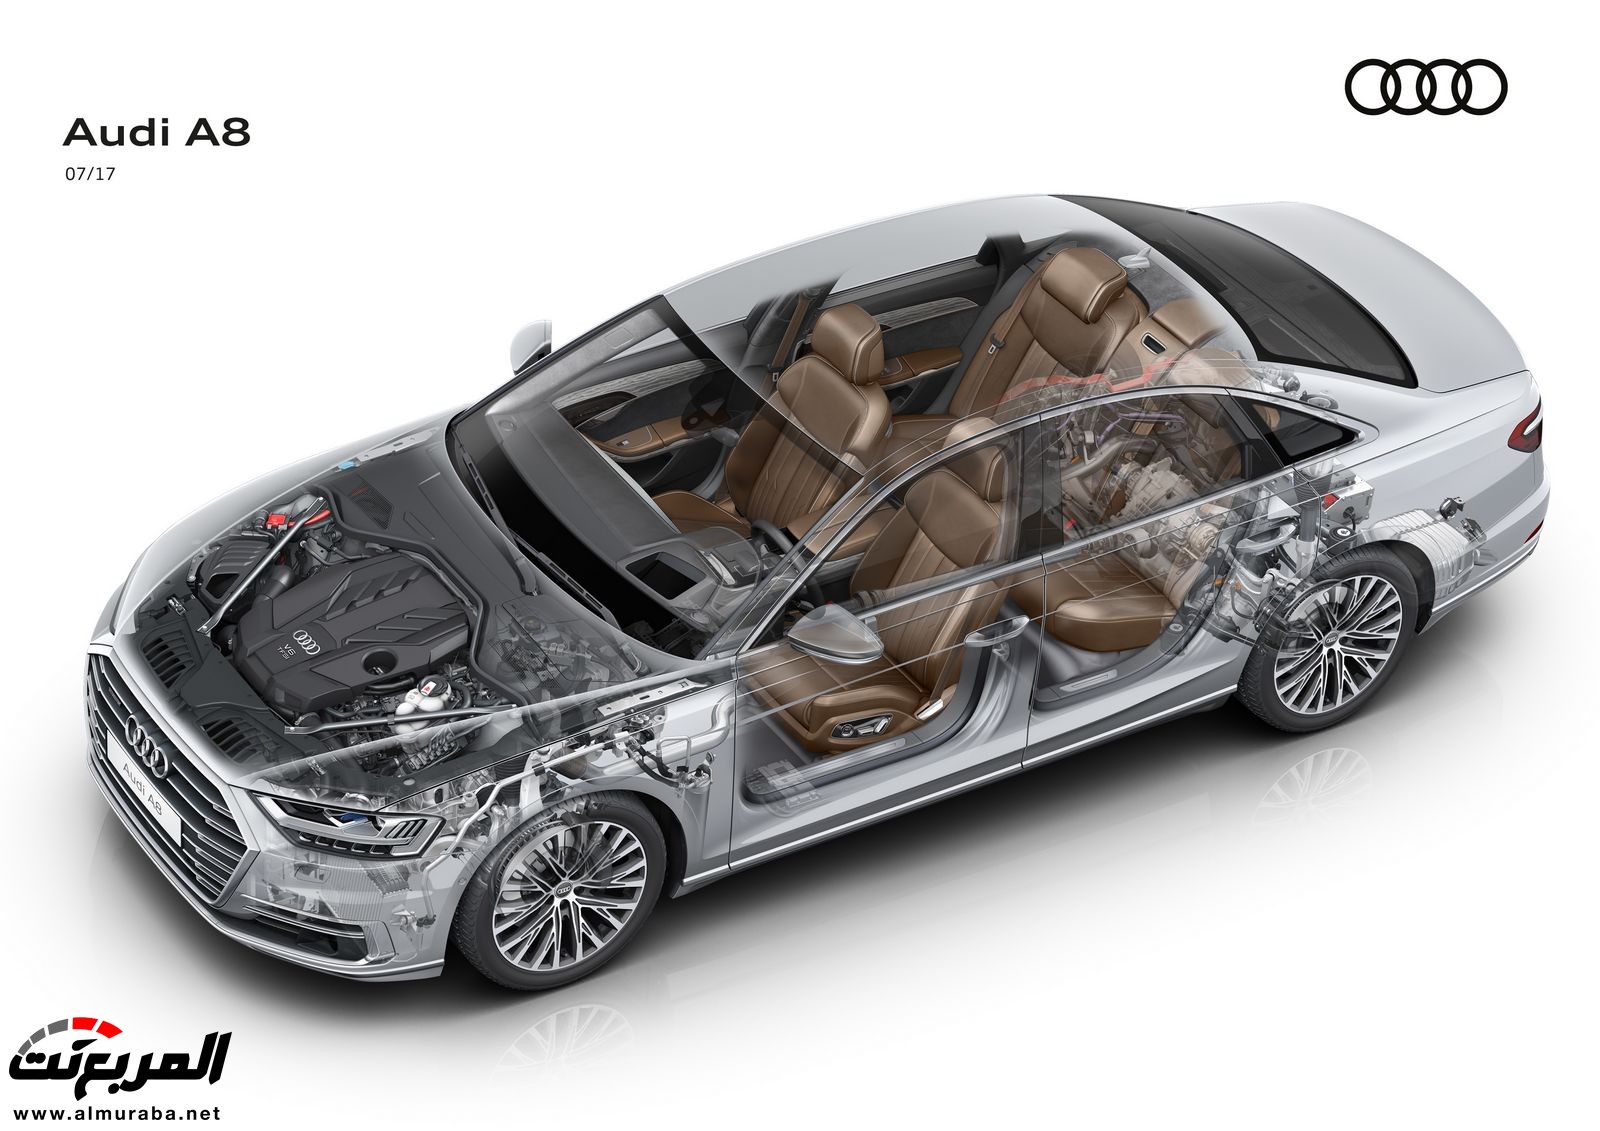 أودي A8 2018 الجديدة كلياً تكشف نفسها بتصميم وتقنيات متطورة "معلومات + 100 صورة" Audi A8 74